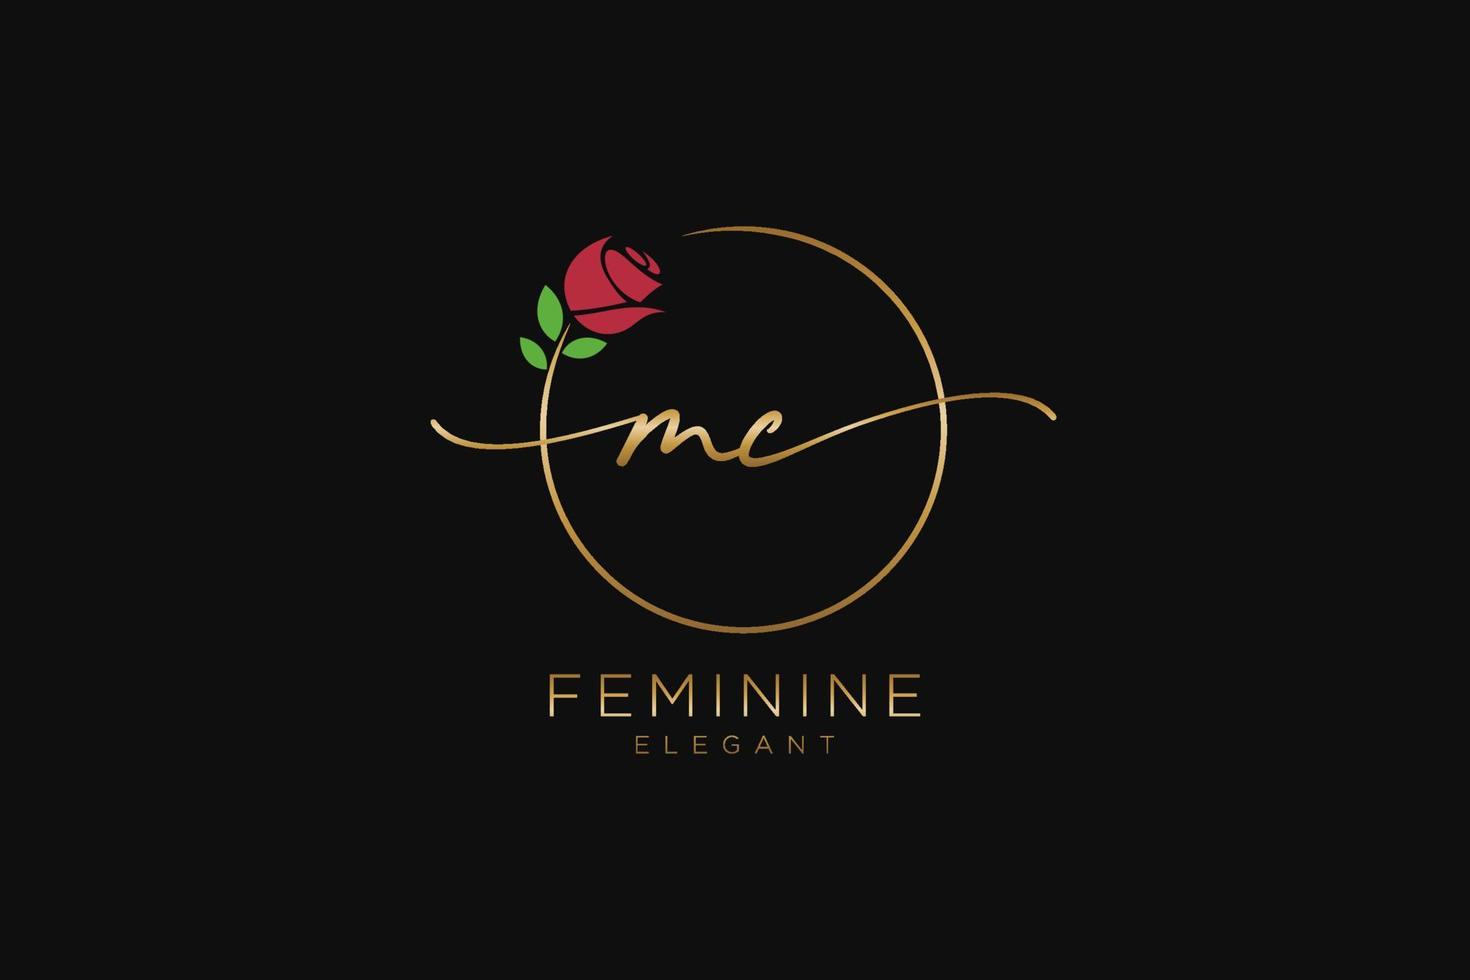 monograma de belleza del logotipo femenino inicial mc y diseño elegante del logotipo, logotipo de escritura a mano de la firma inicial, boda, moda, floral y botánica con plantilla creativa. vector